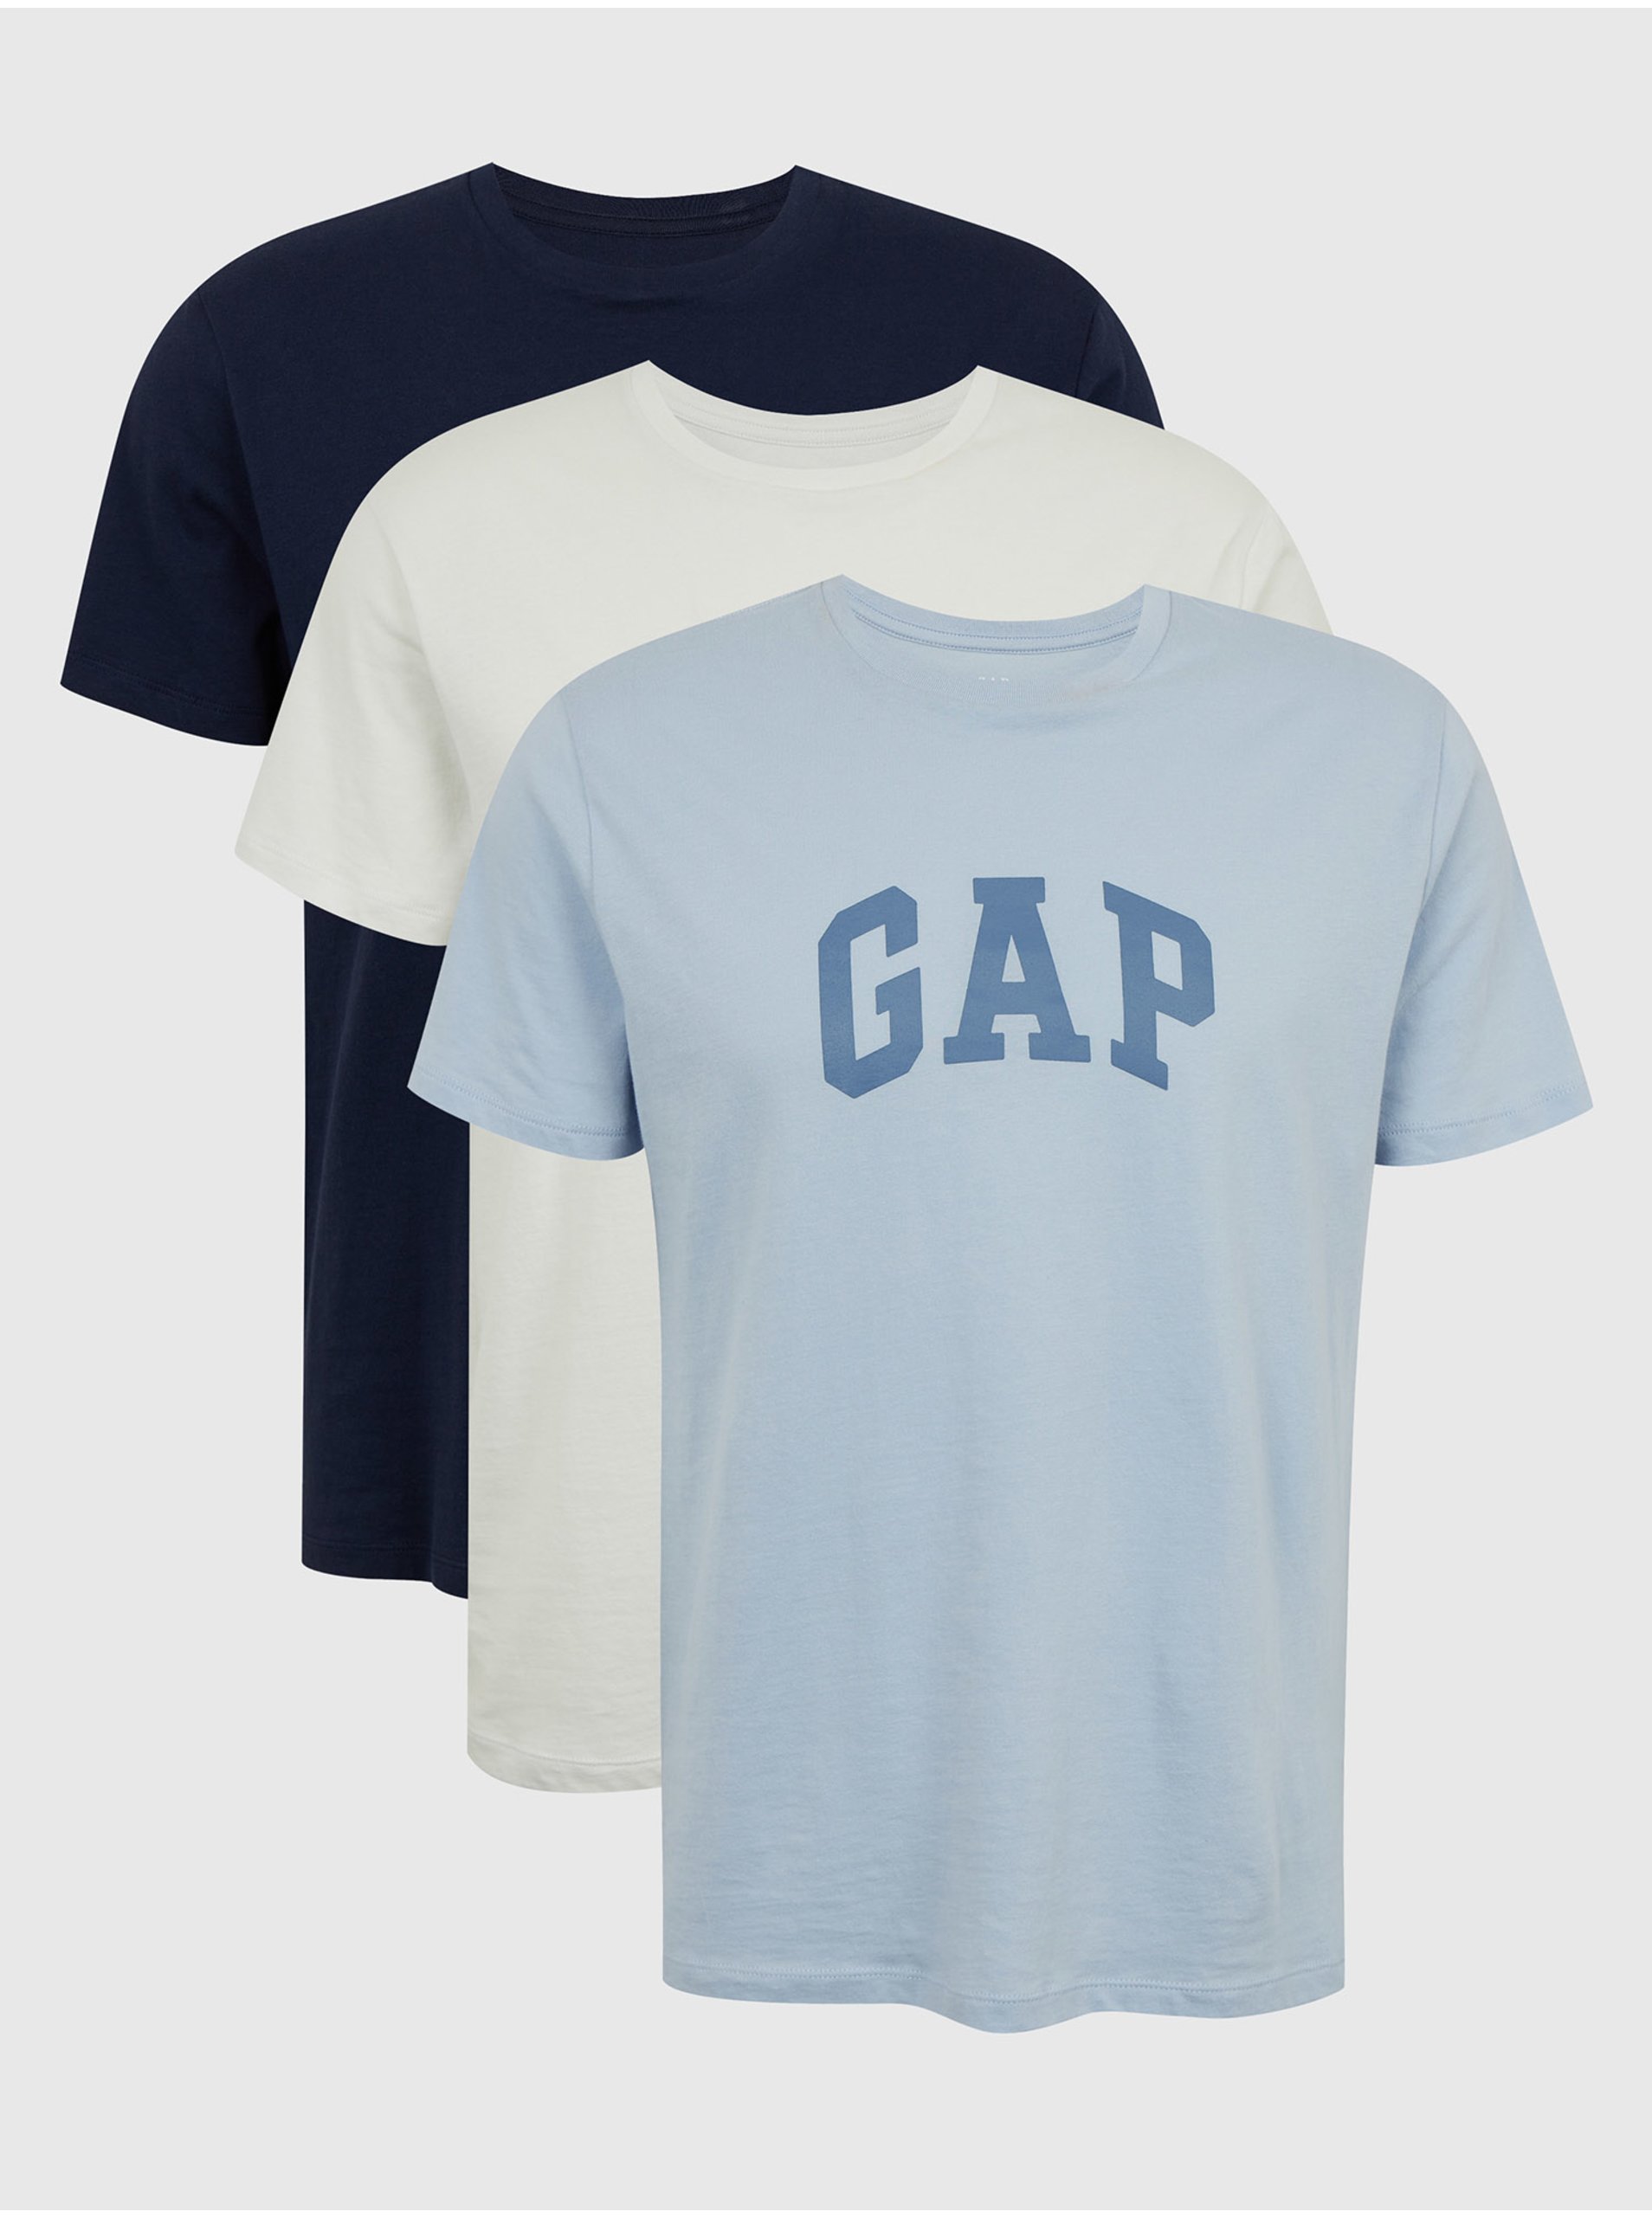 Levně Barevná pánská trička s logem GAP, 3ks